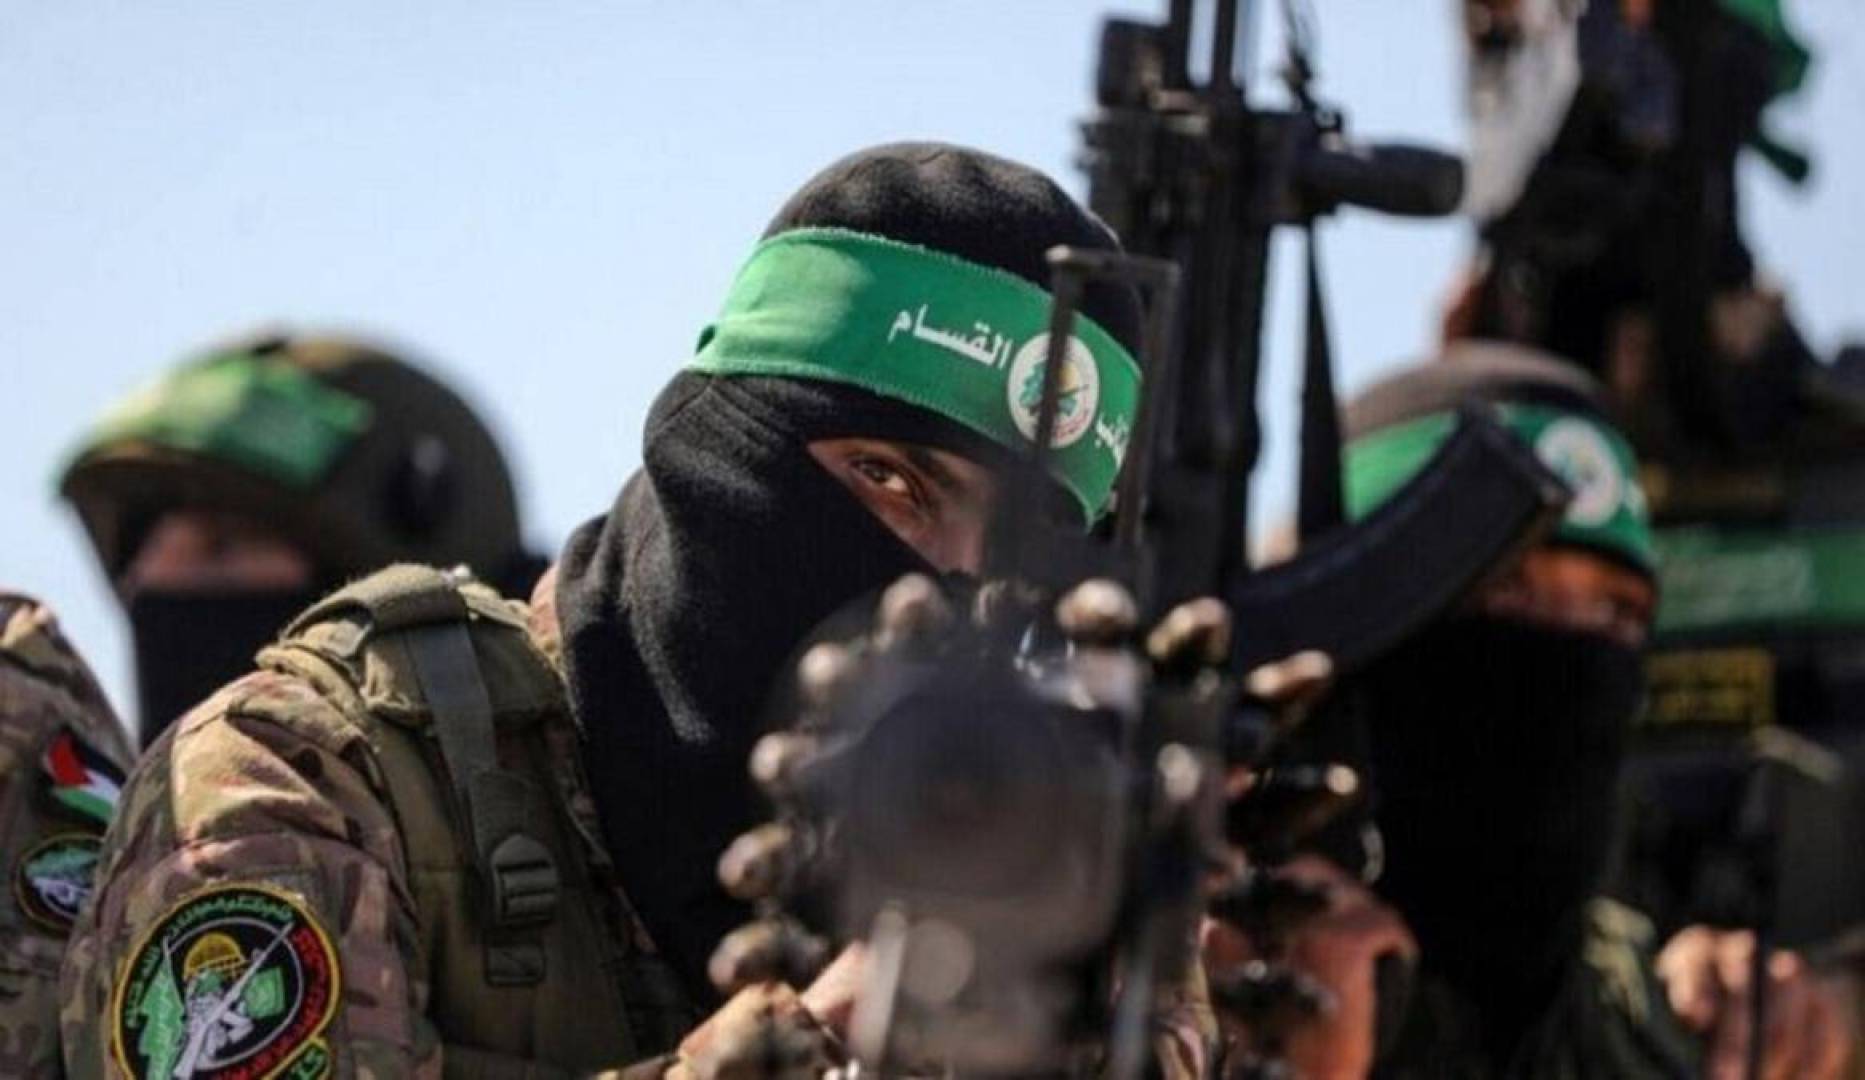 كتائب القسام تدمر 9 آليات إسرائيلية بعدة محاور بقطاع غزة وتقنص جندي منذ الصباح حتى الآن